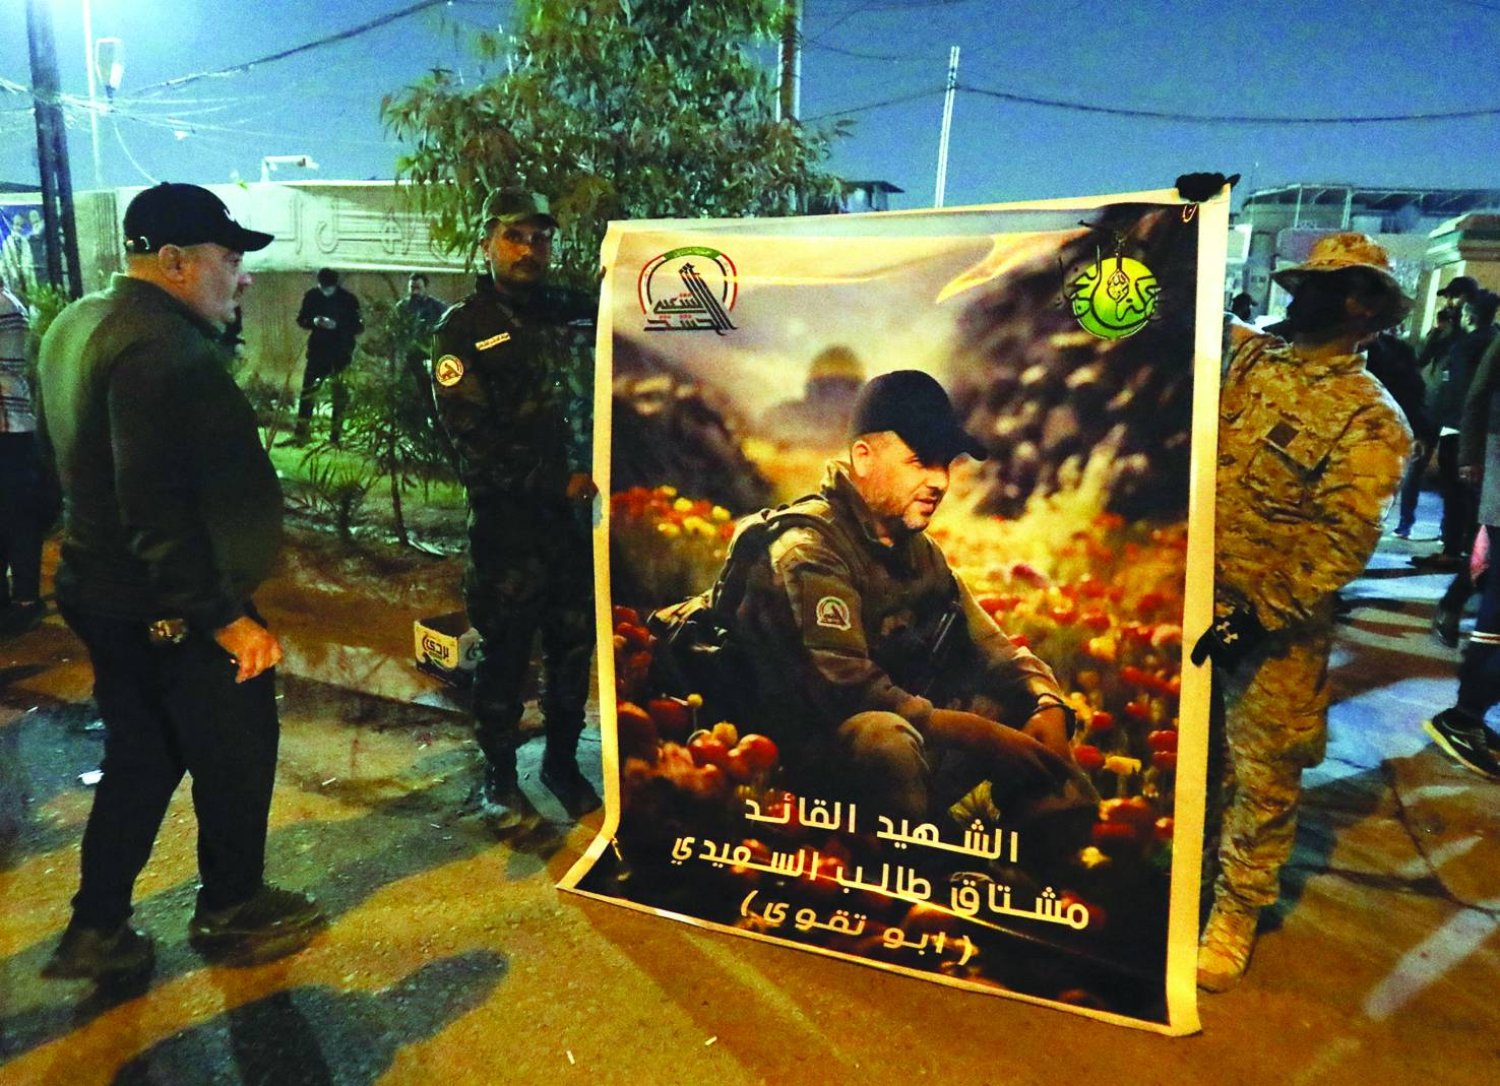 
مقاتلون من فصائل «الحشد الشعبي» يحملون صورة القيادي «أبو تقوى» الذي قُتل بضربة أميركية على بغداد يناير الماضي (إ.ب.أ)